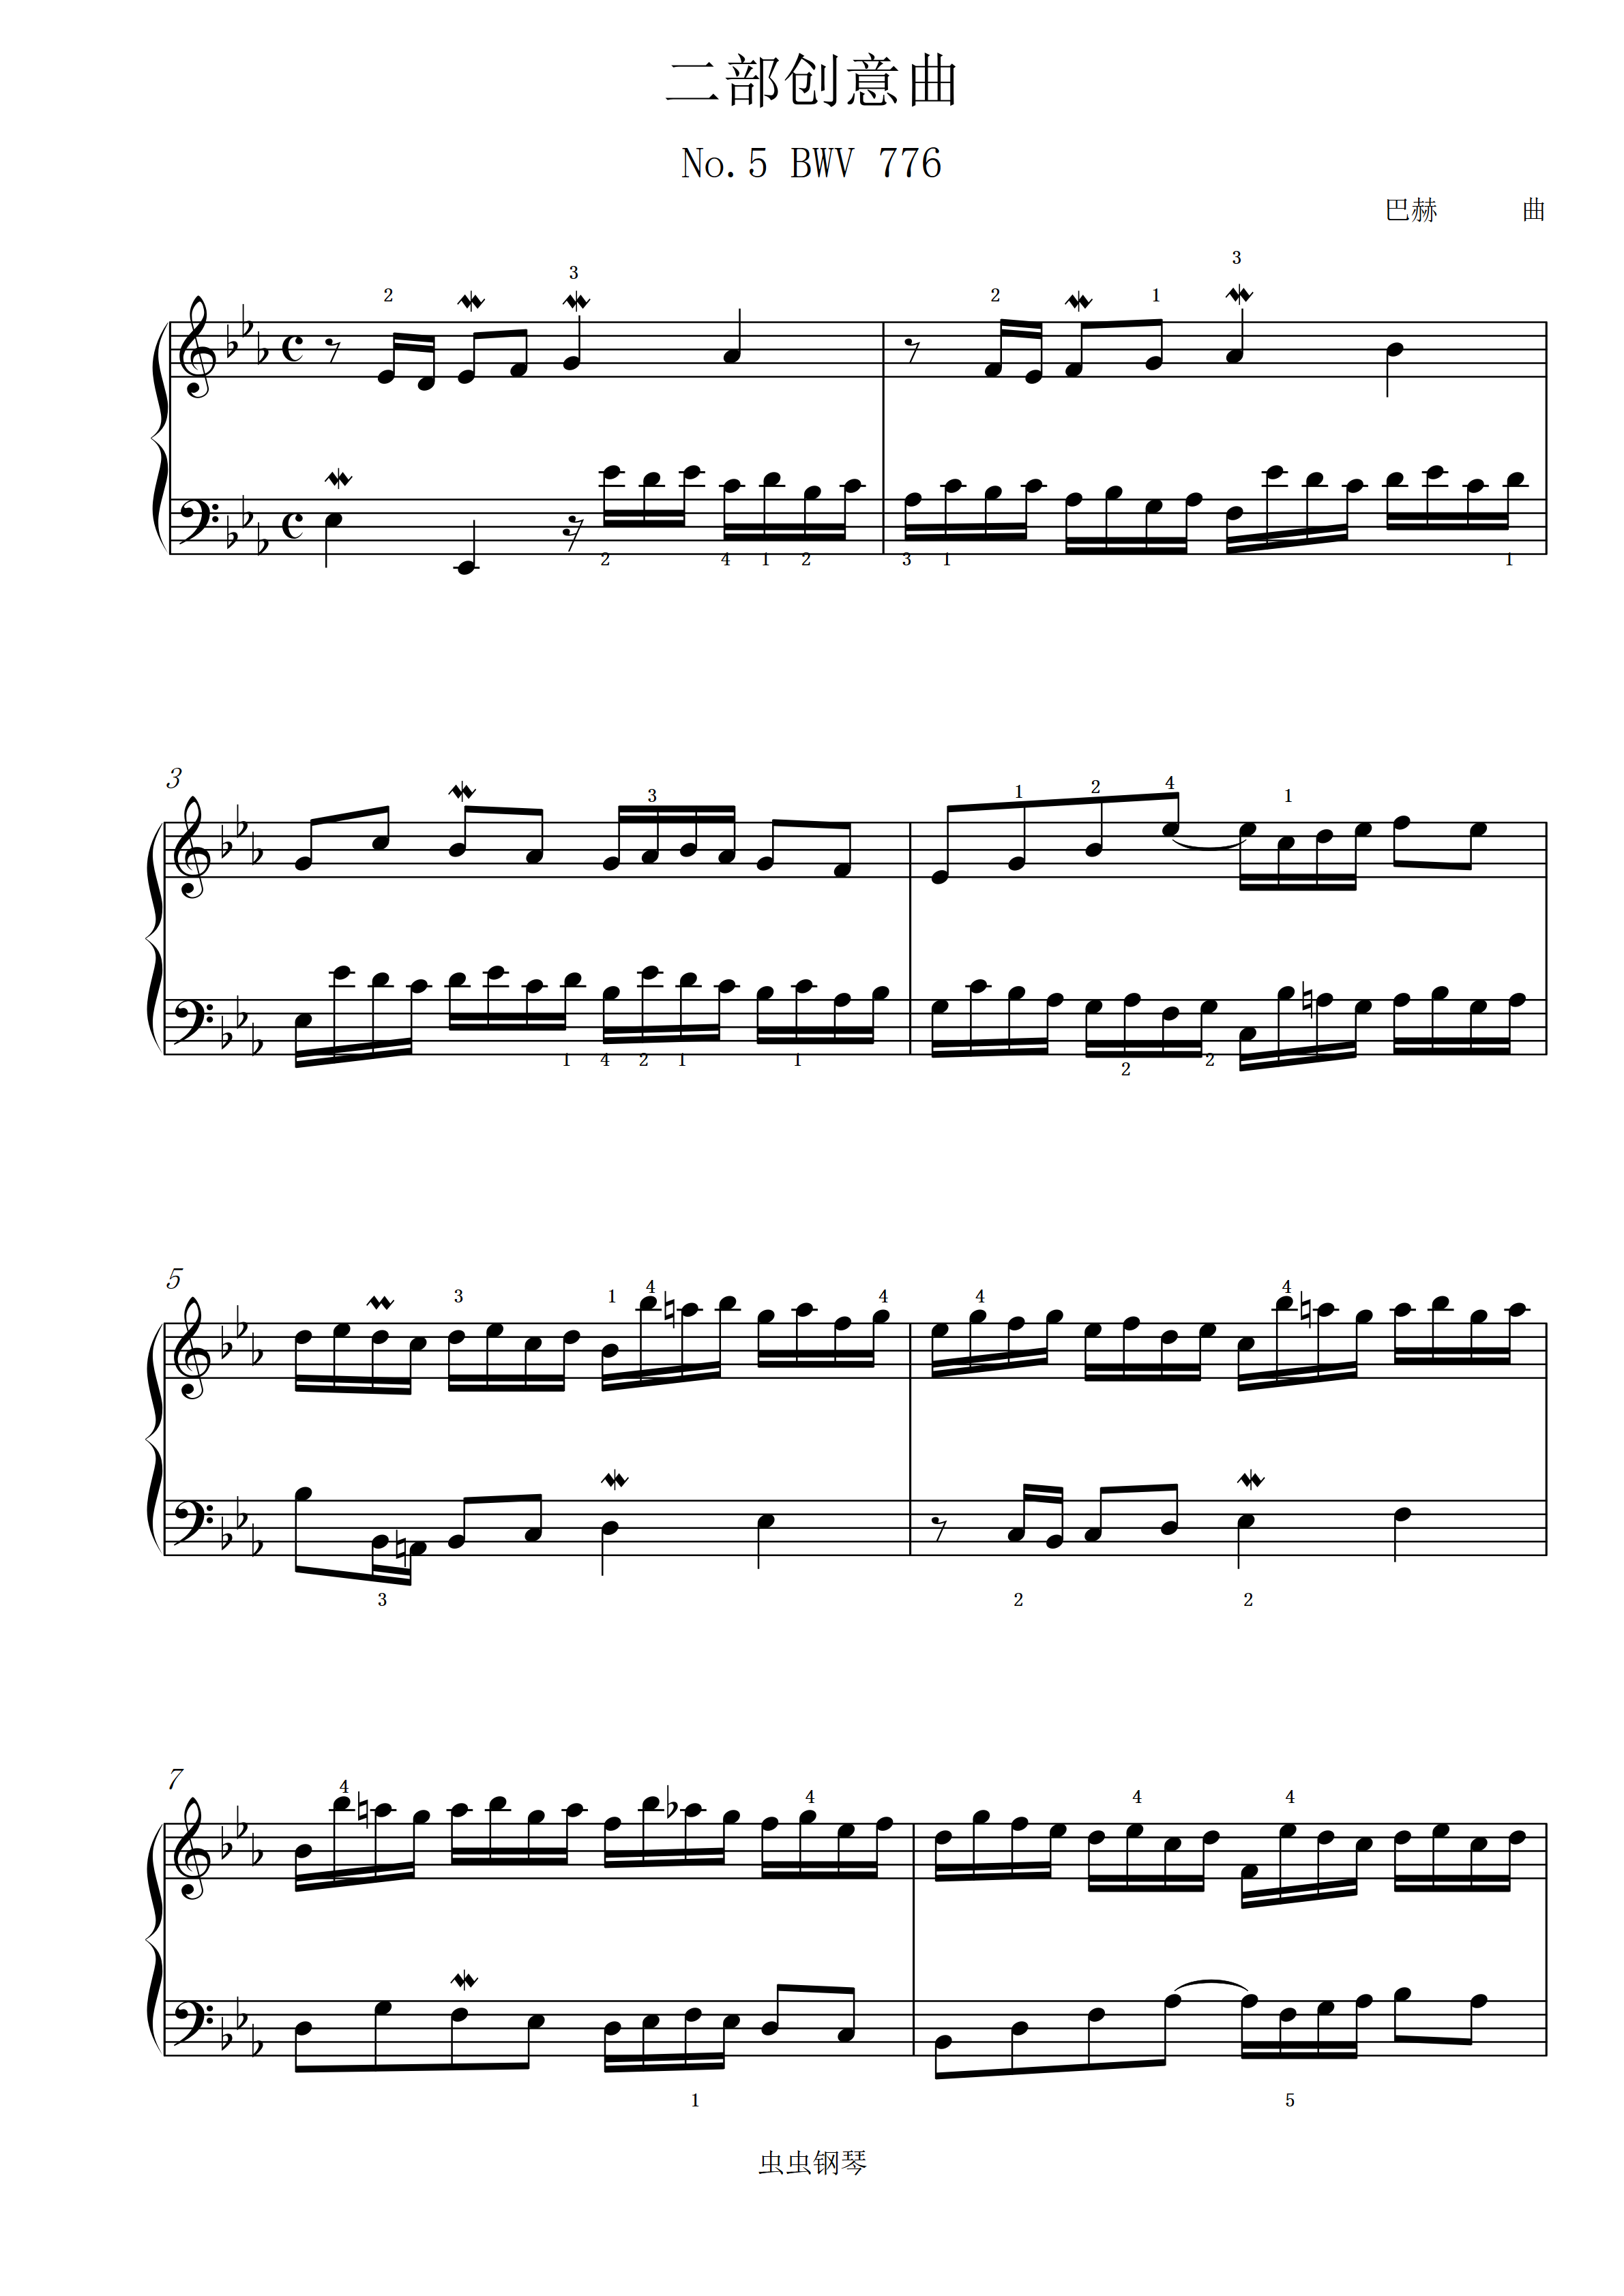 巴赫二部创意曲7谱子图片